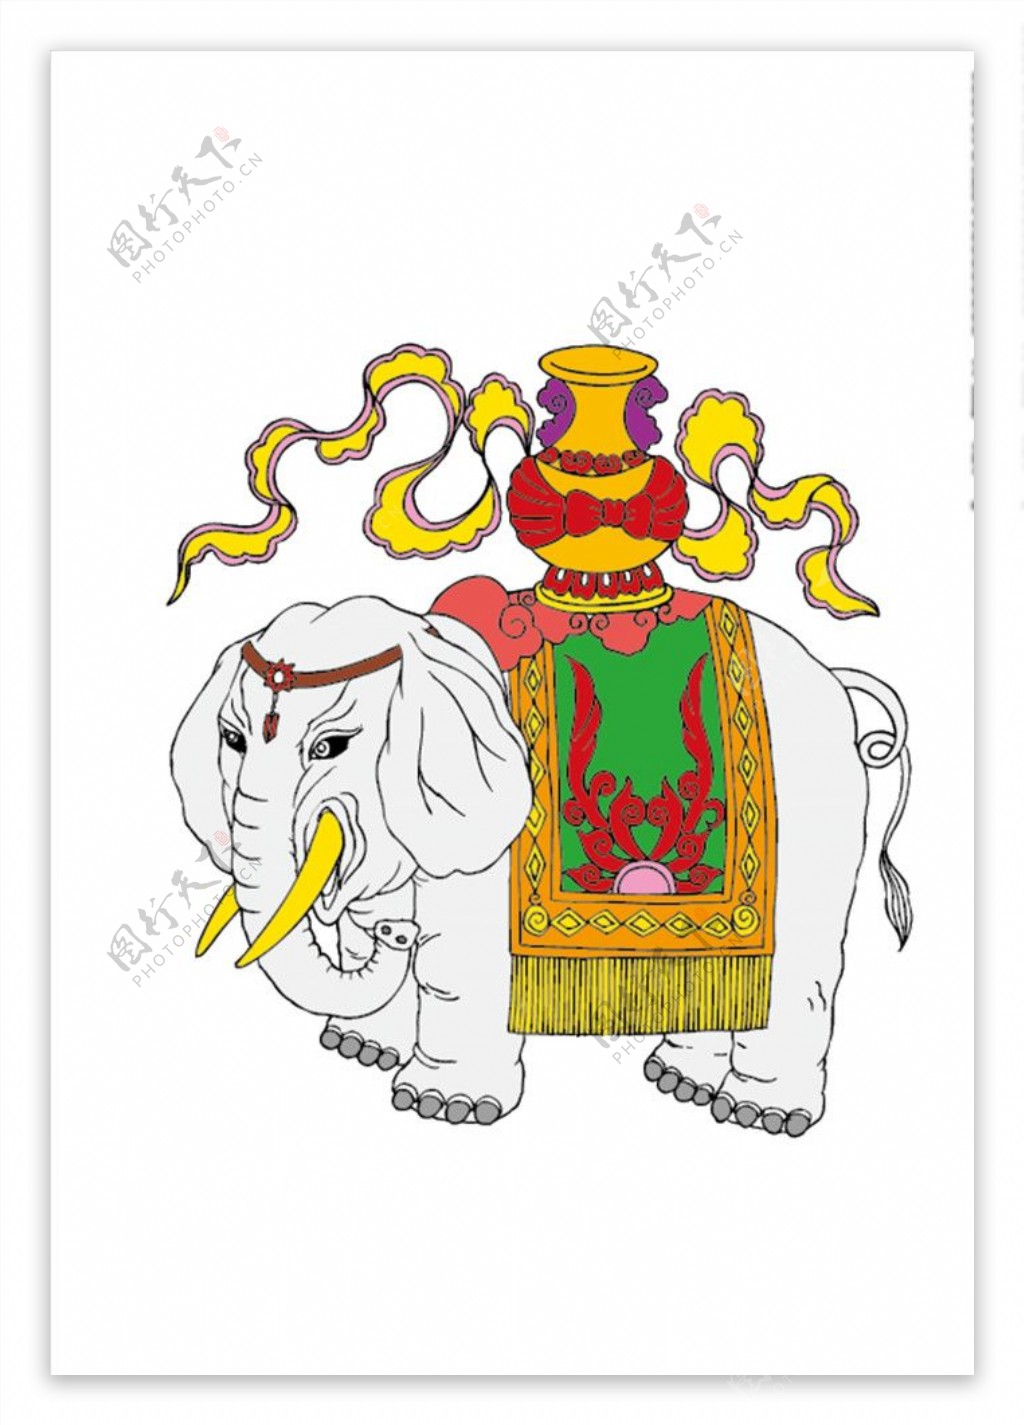 传统吉祥图案大象